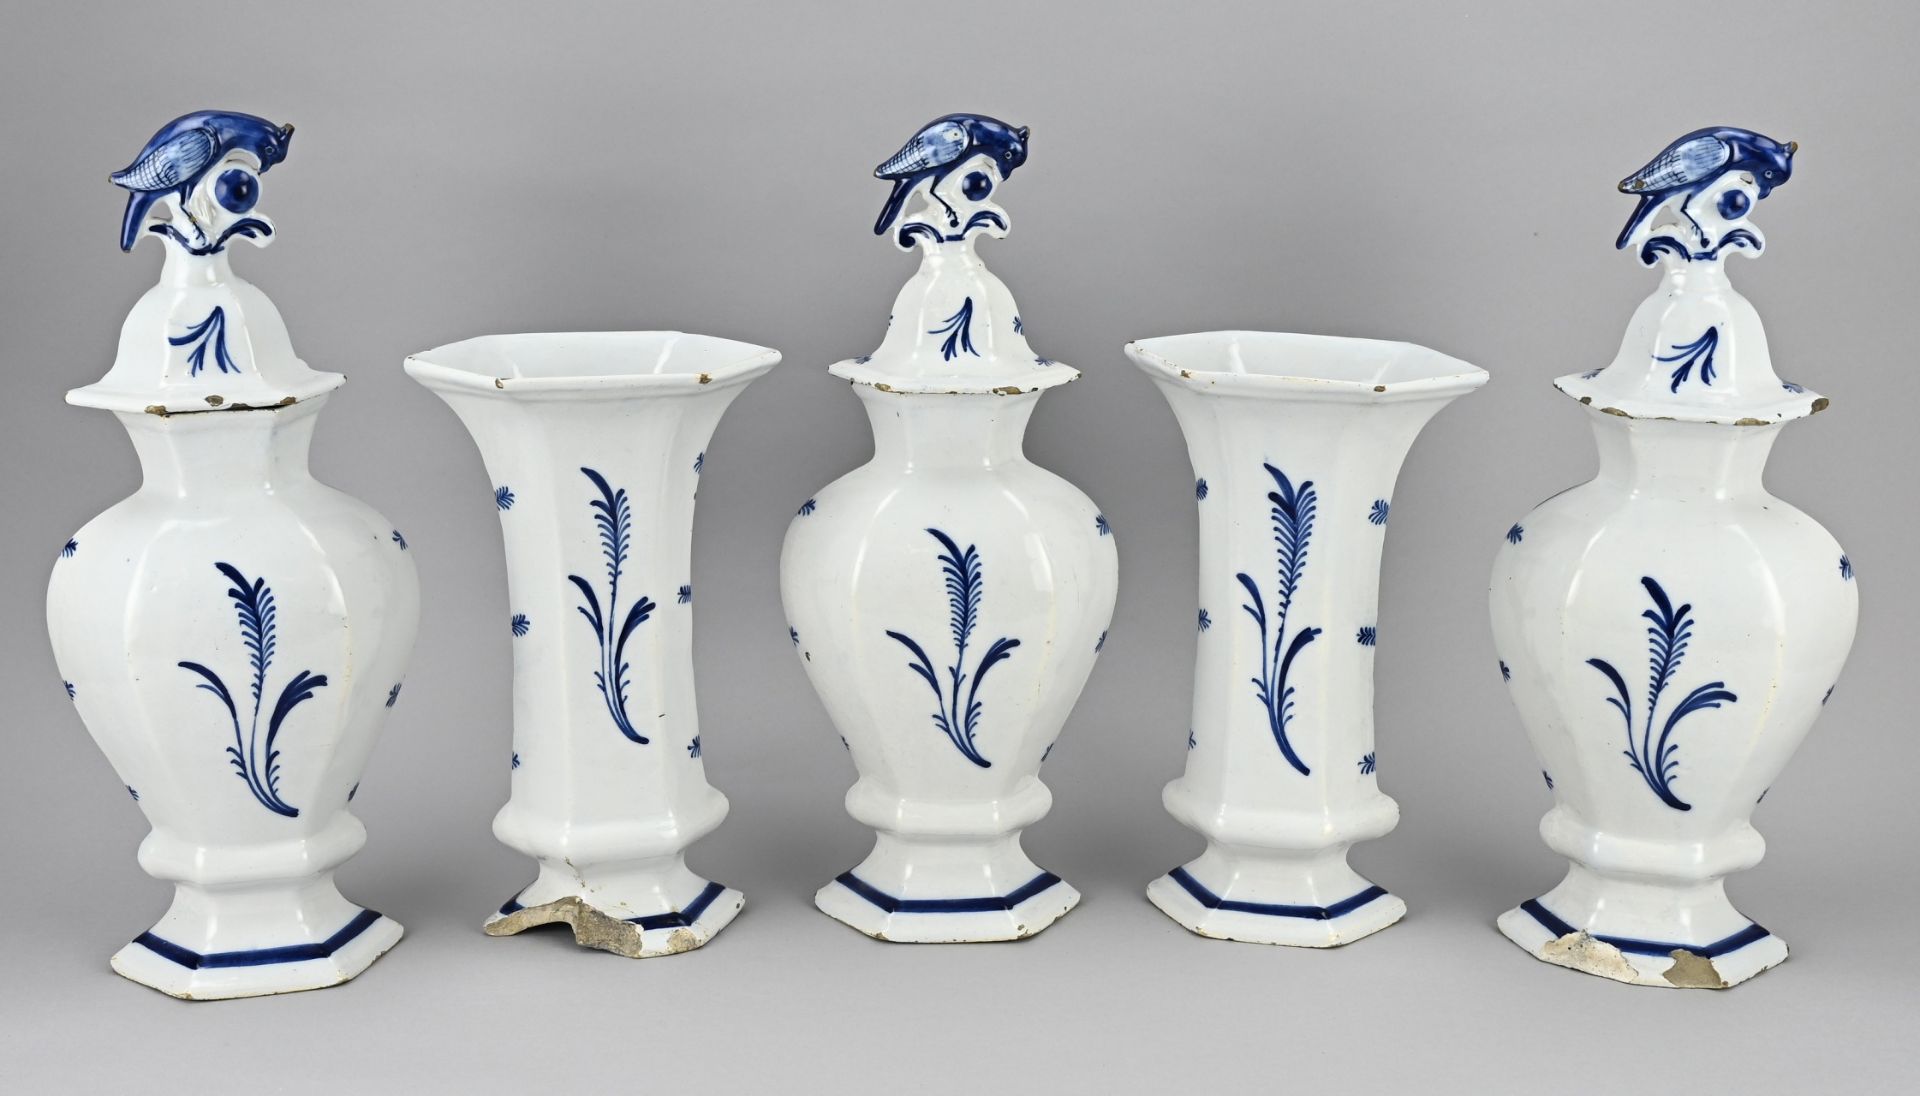 5-piece Delft cabinet set, H 29 - 41 cm. - Image 2 of 3